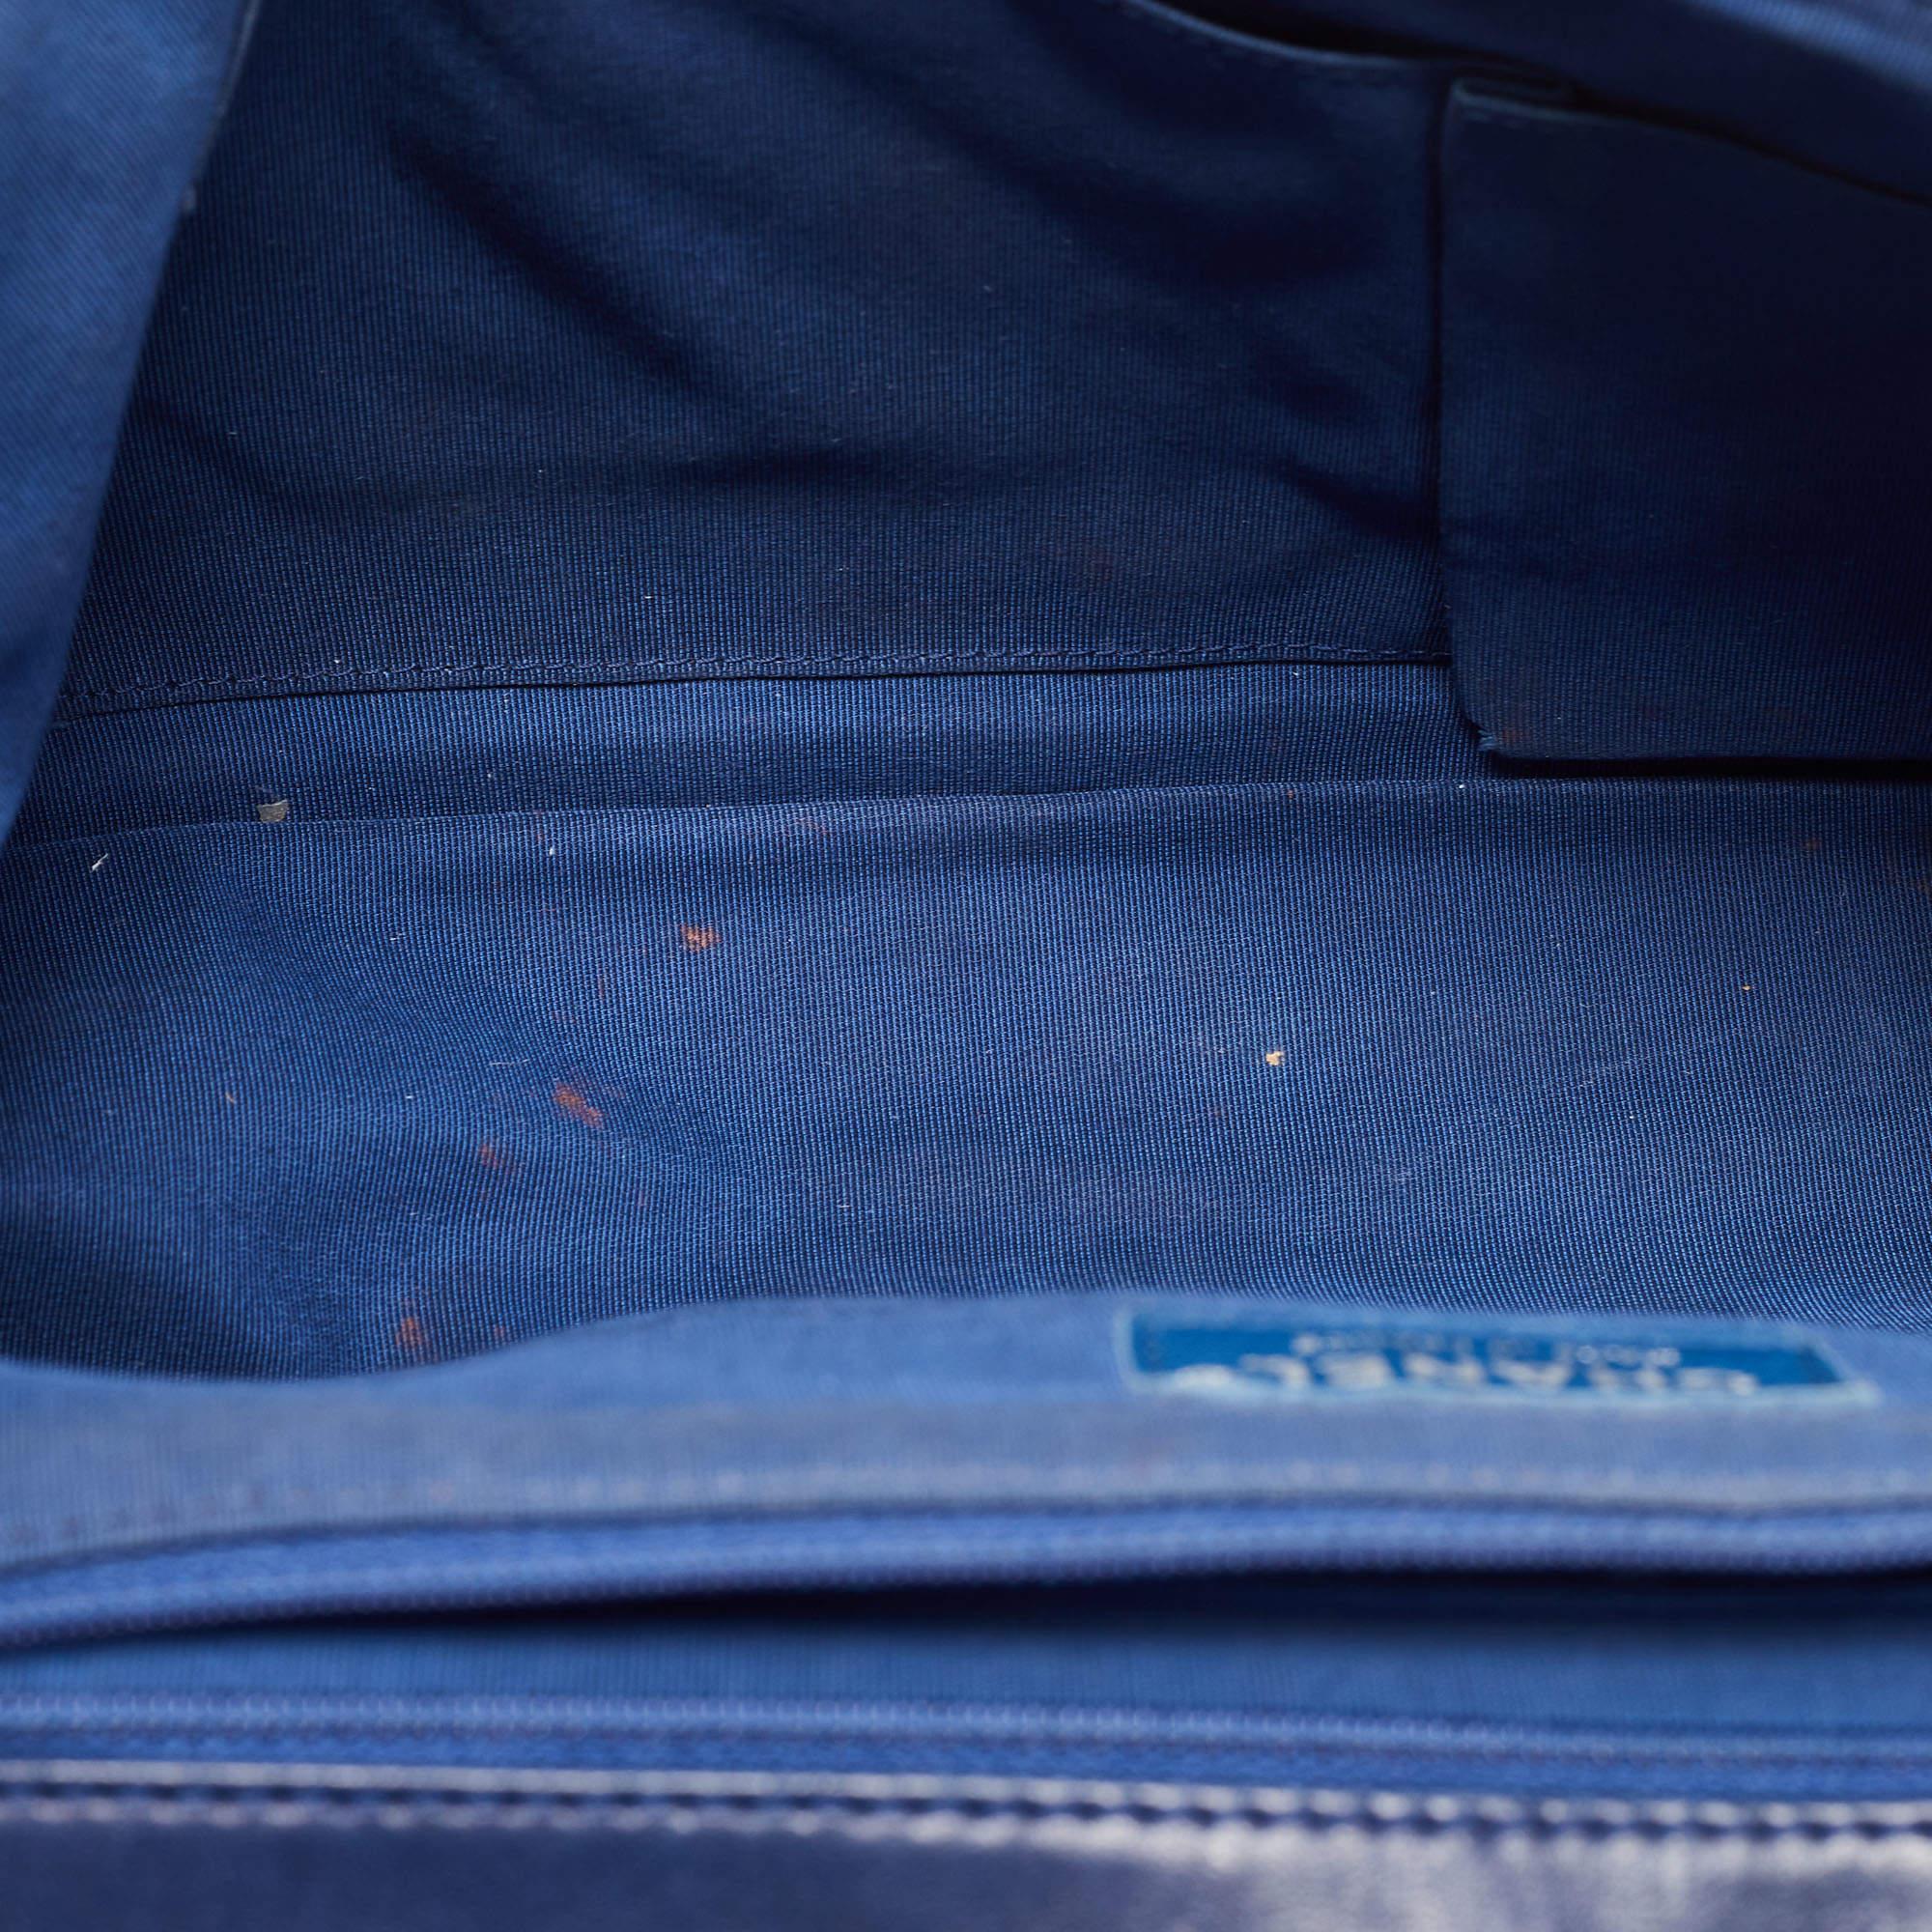 Chanel Blue Surpique Chevron Leather CC Flap Bag 12